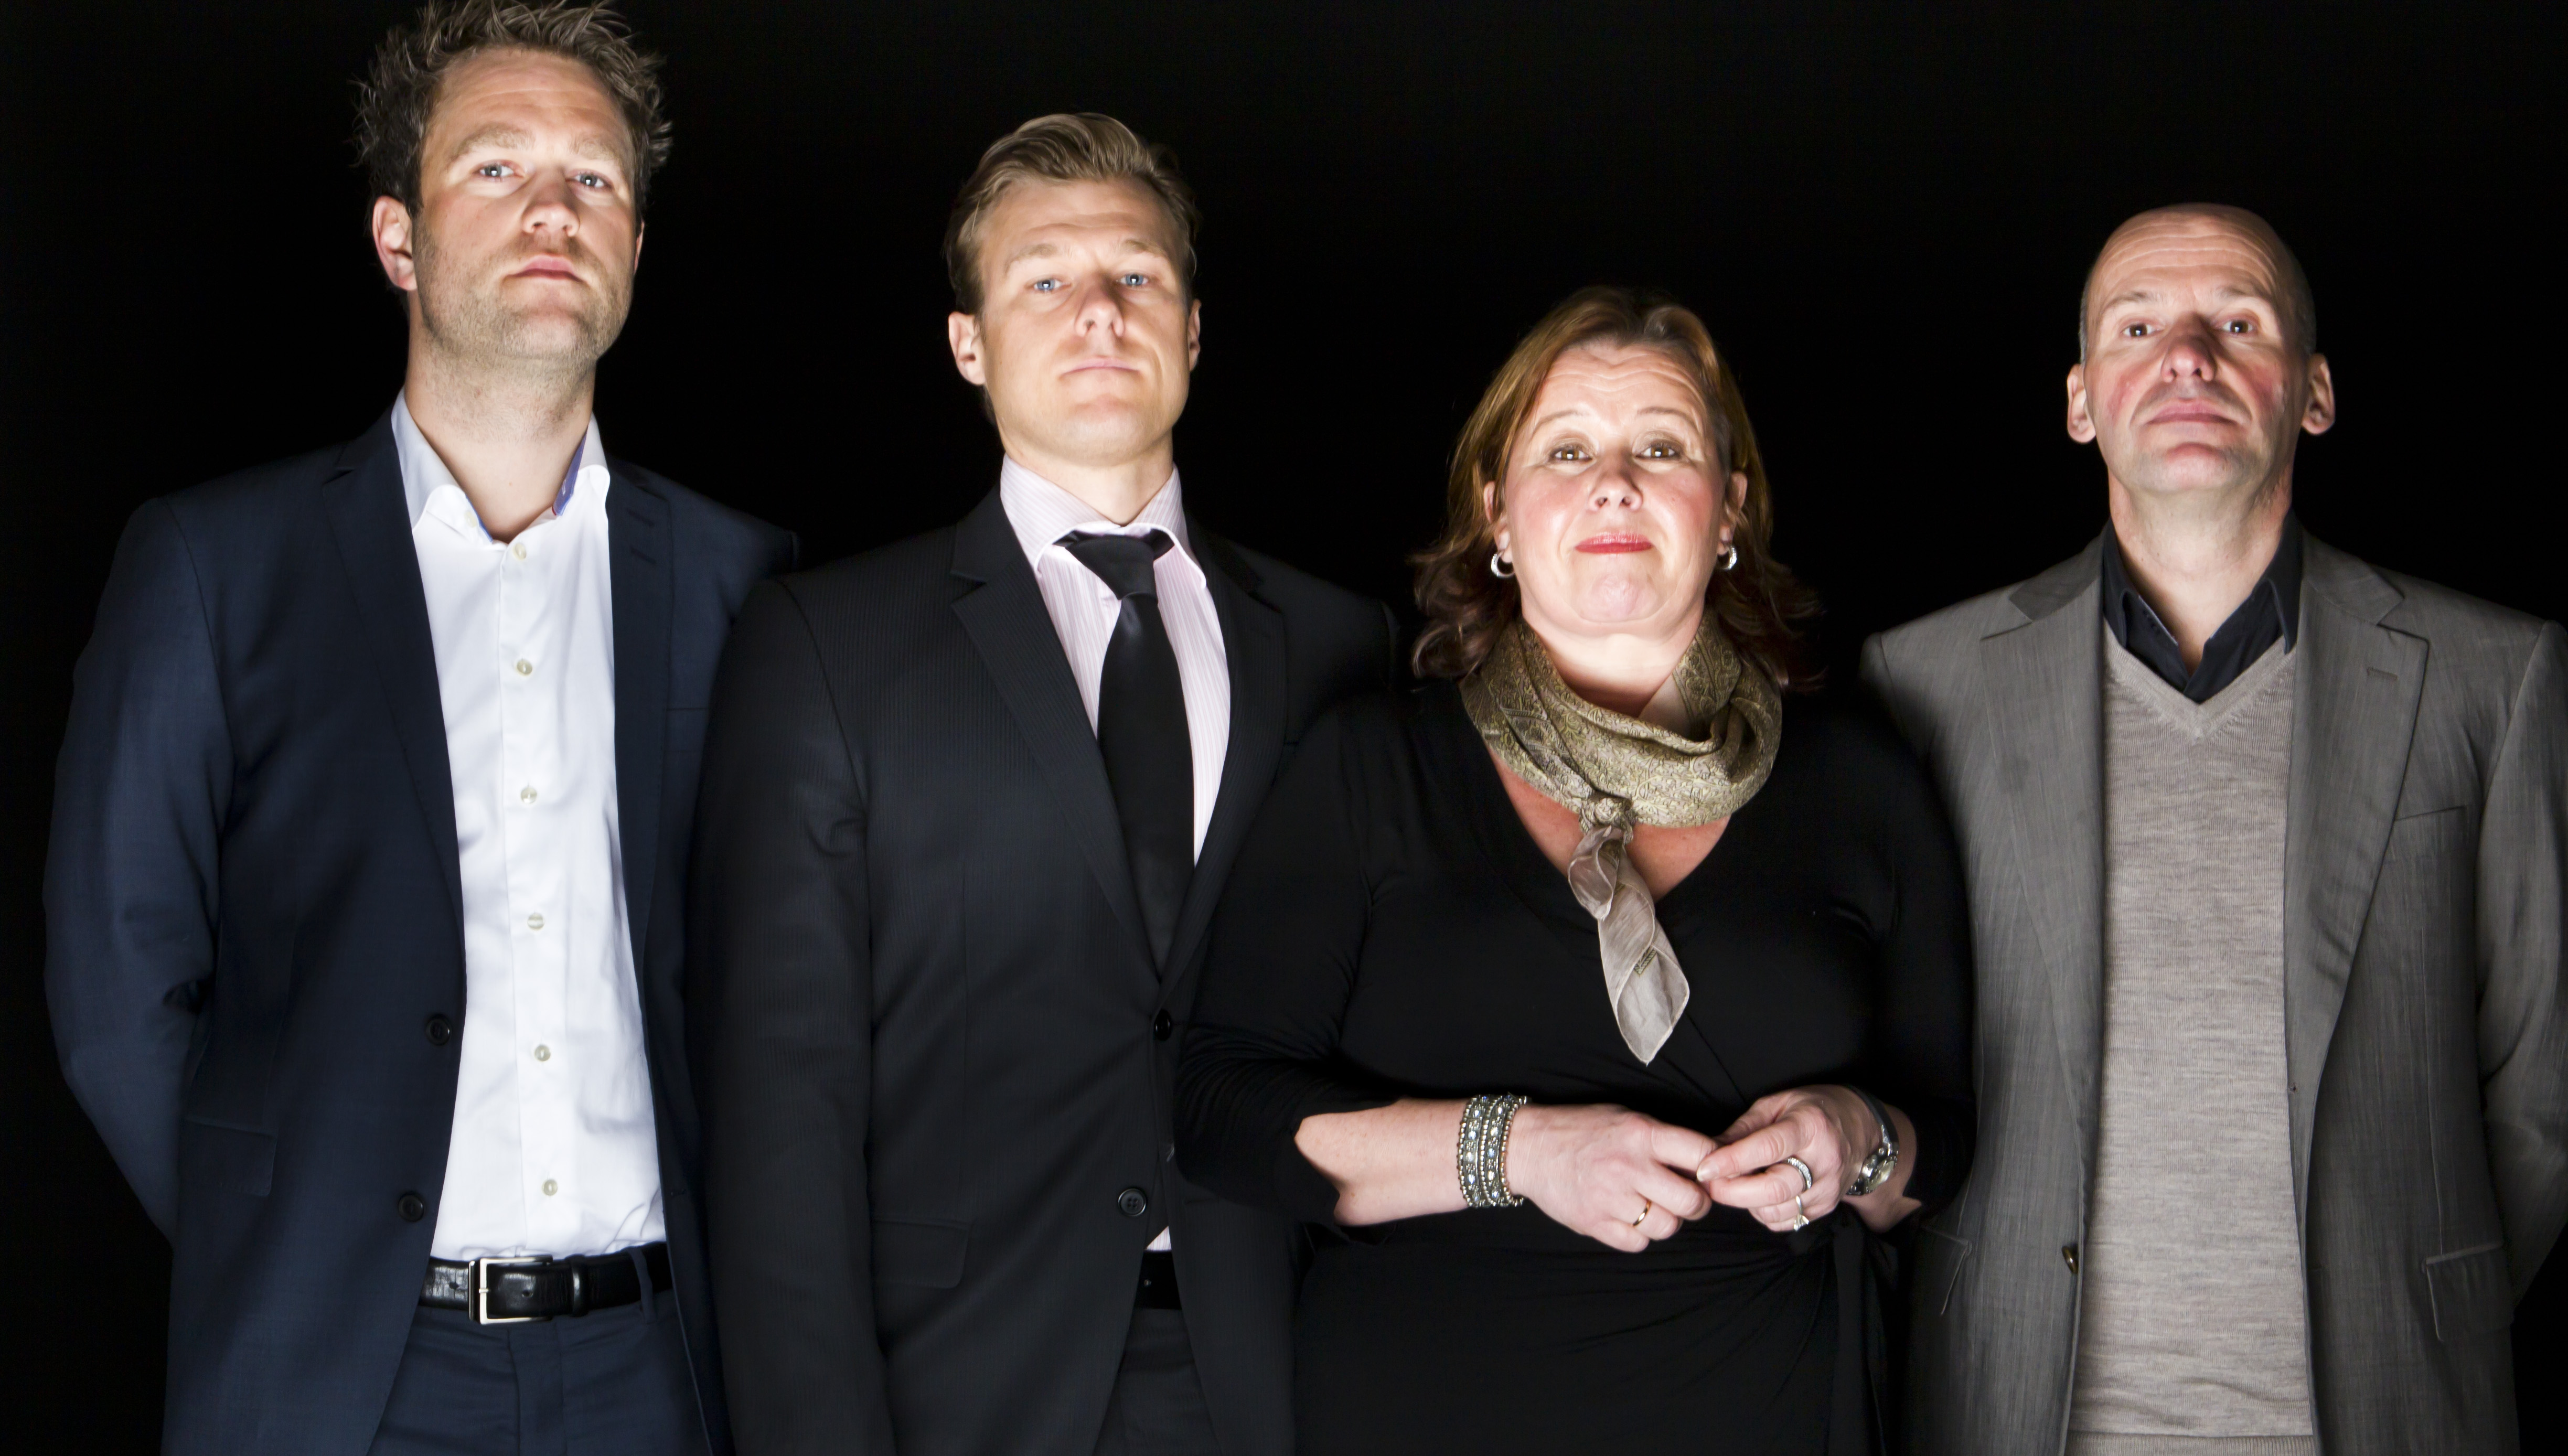 Från vänster: Odd Ivar Grøn, Tord Jordet, Vibeke Hein och Geir Lippestad.